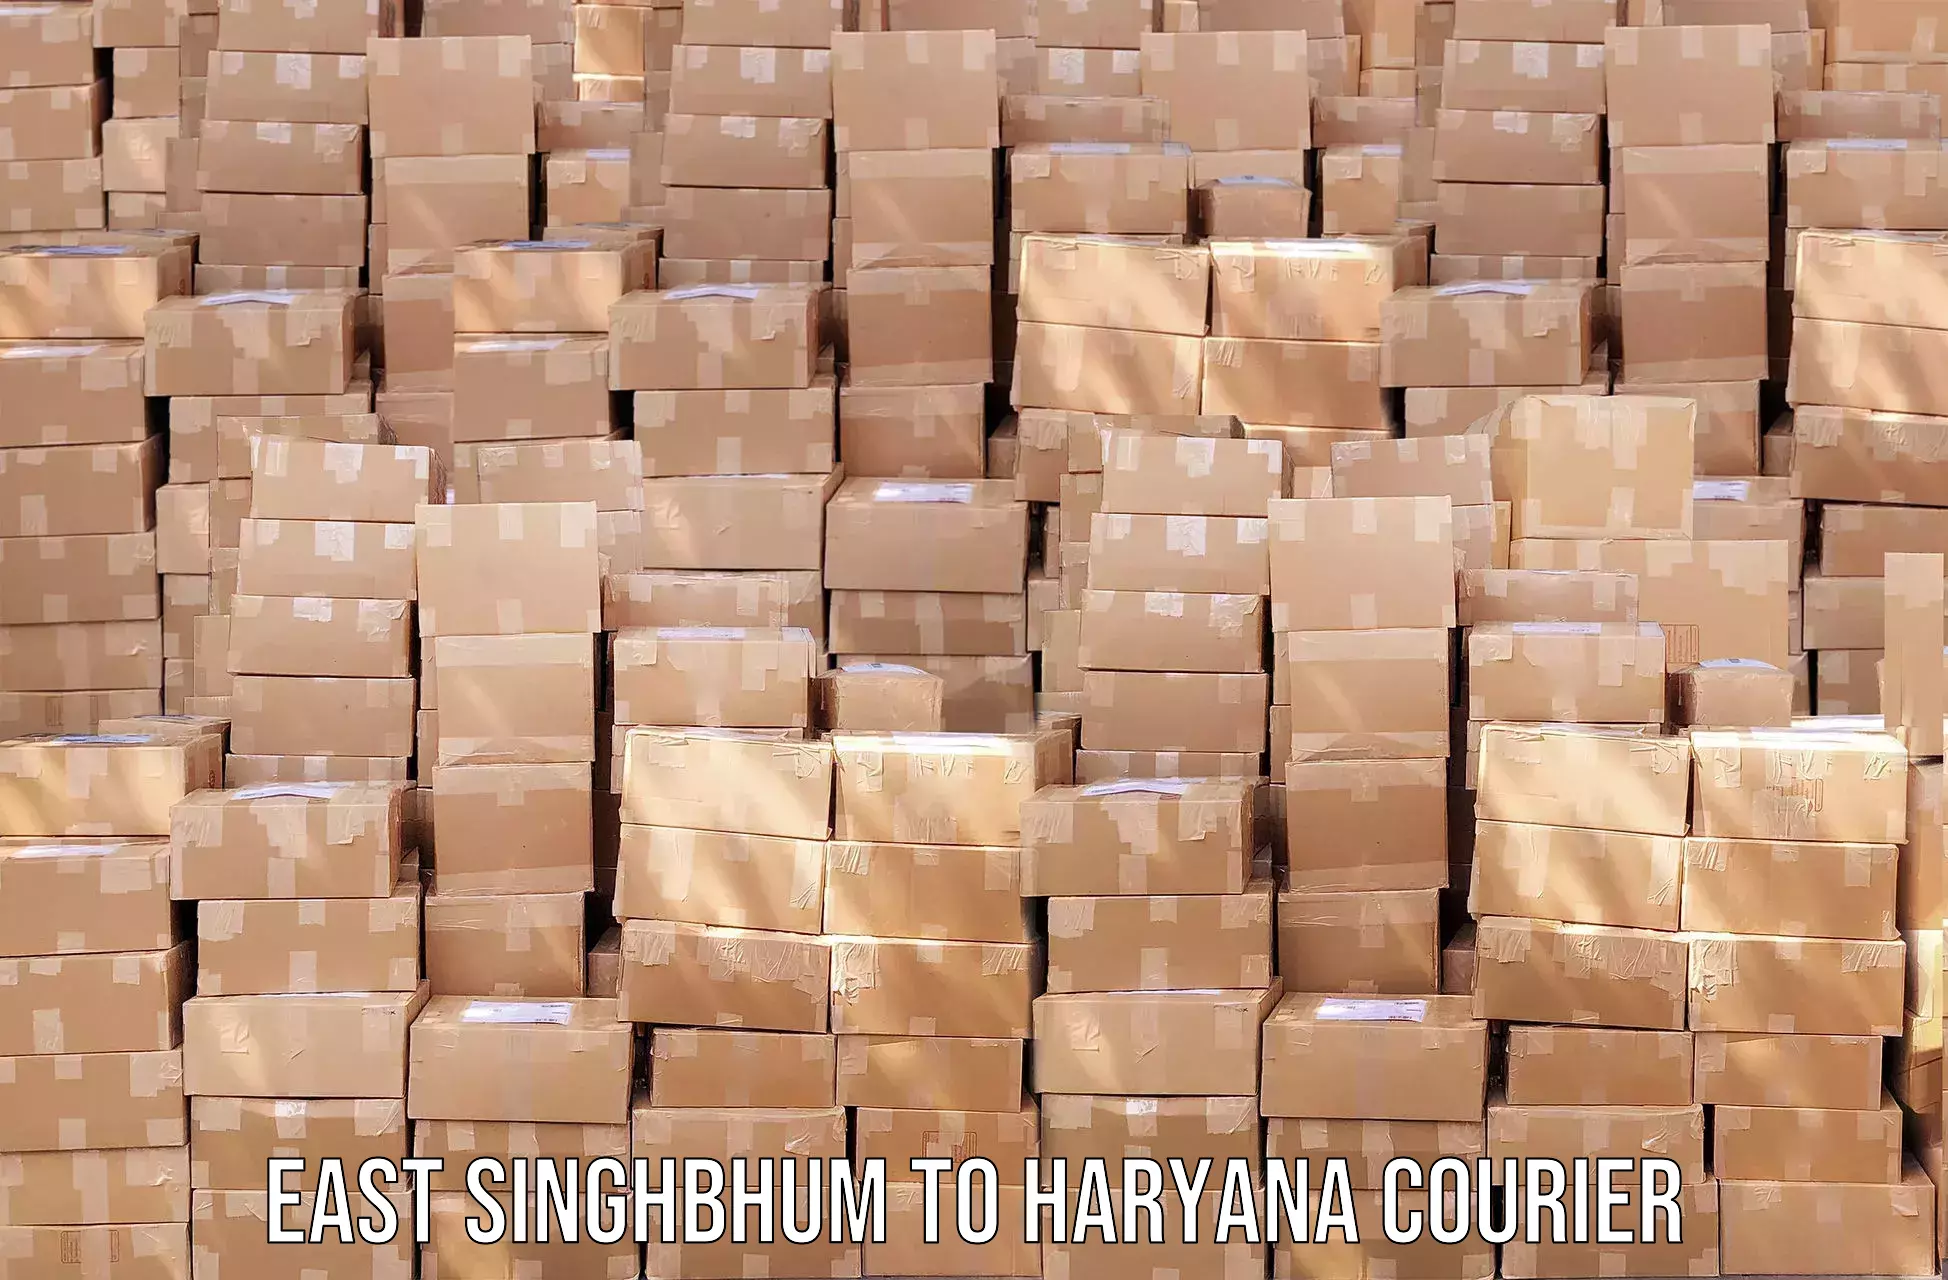 Door-to-door shipment in East Singhbhum to Sonipat